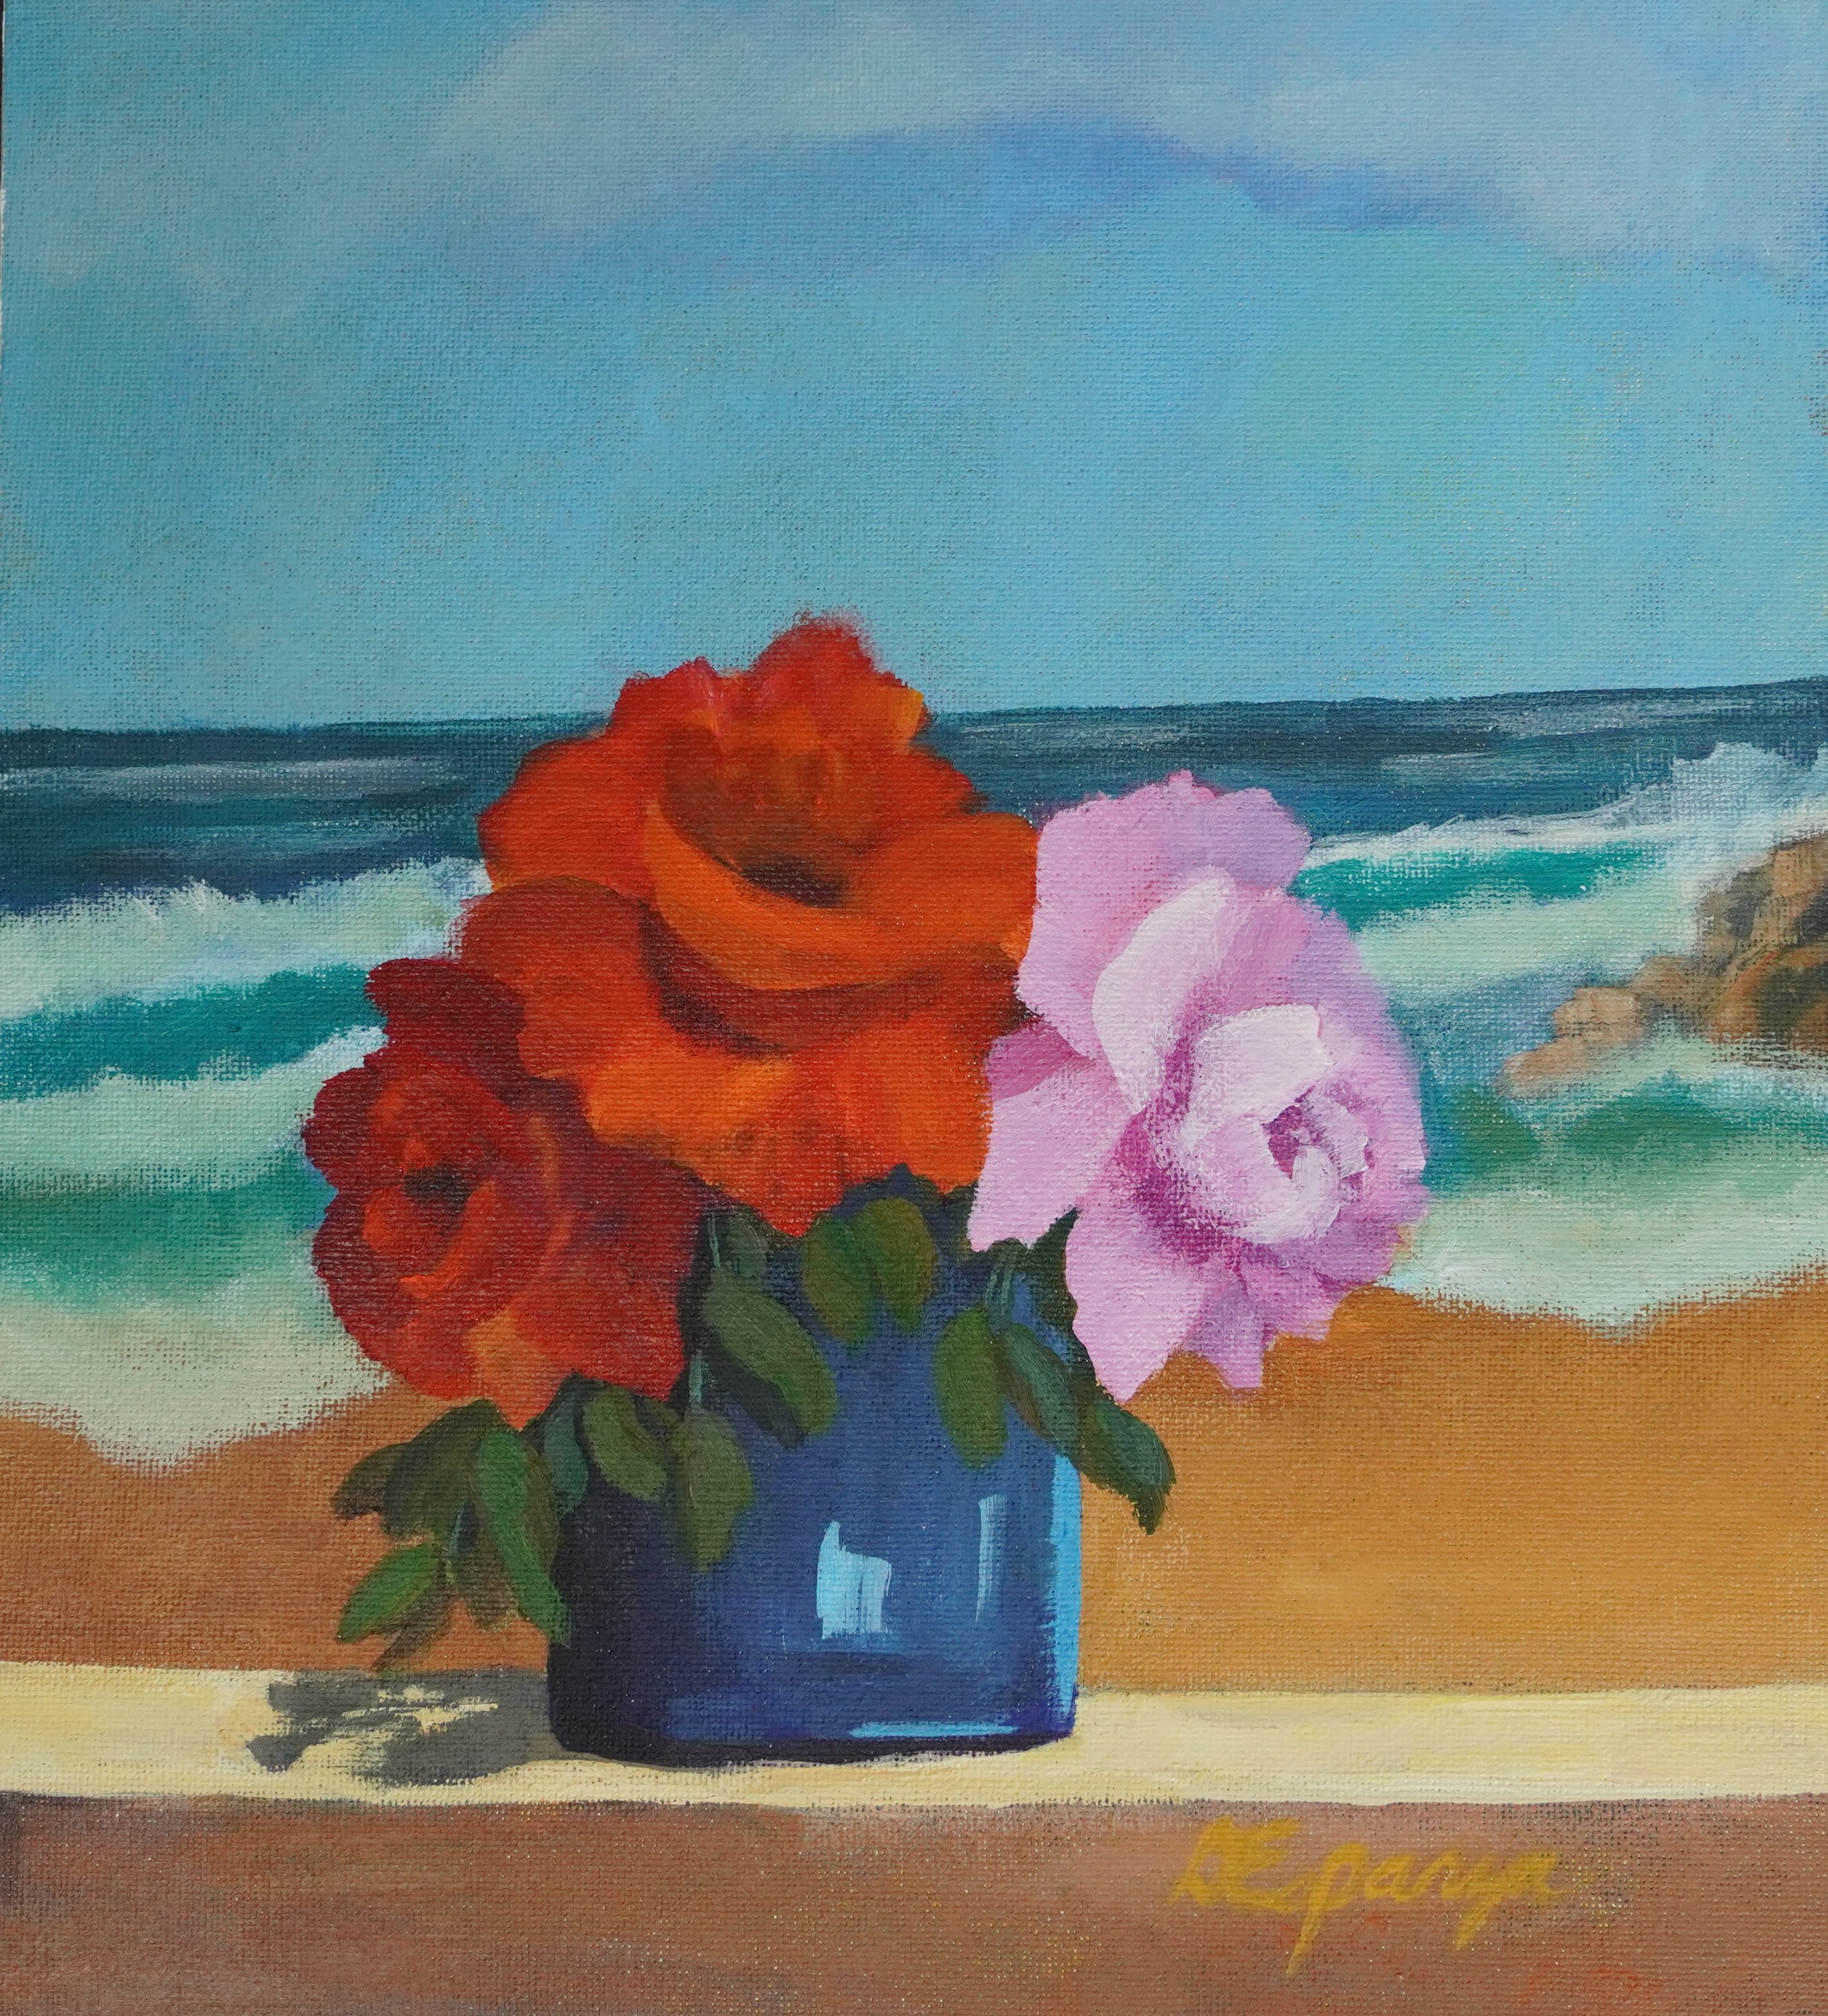 Seaside roses 2 evzeko